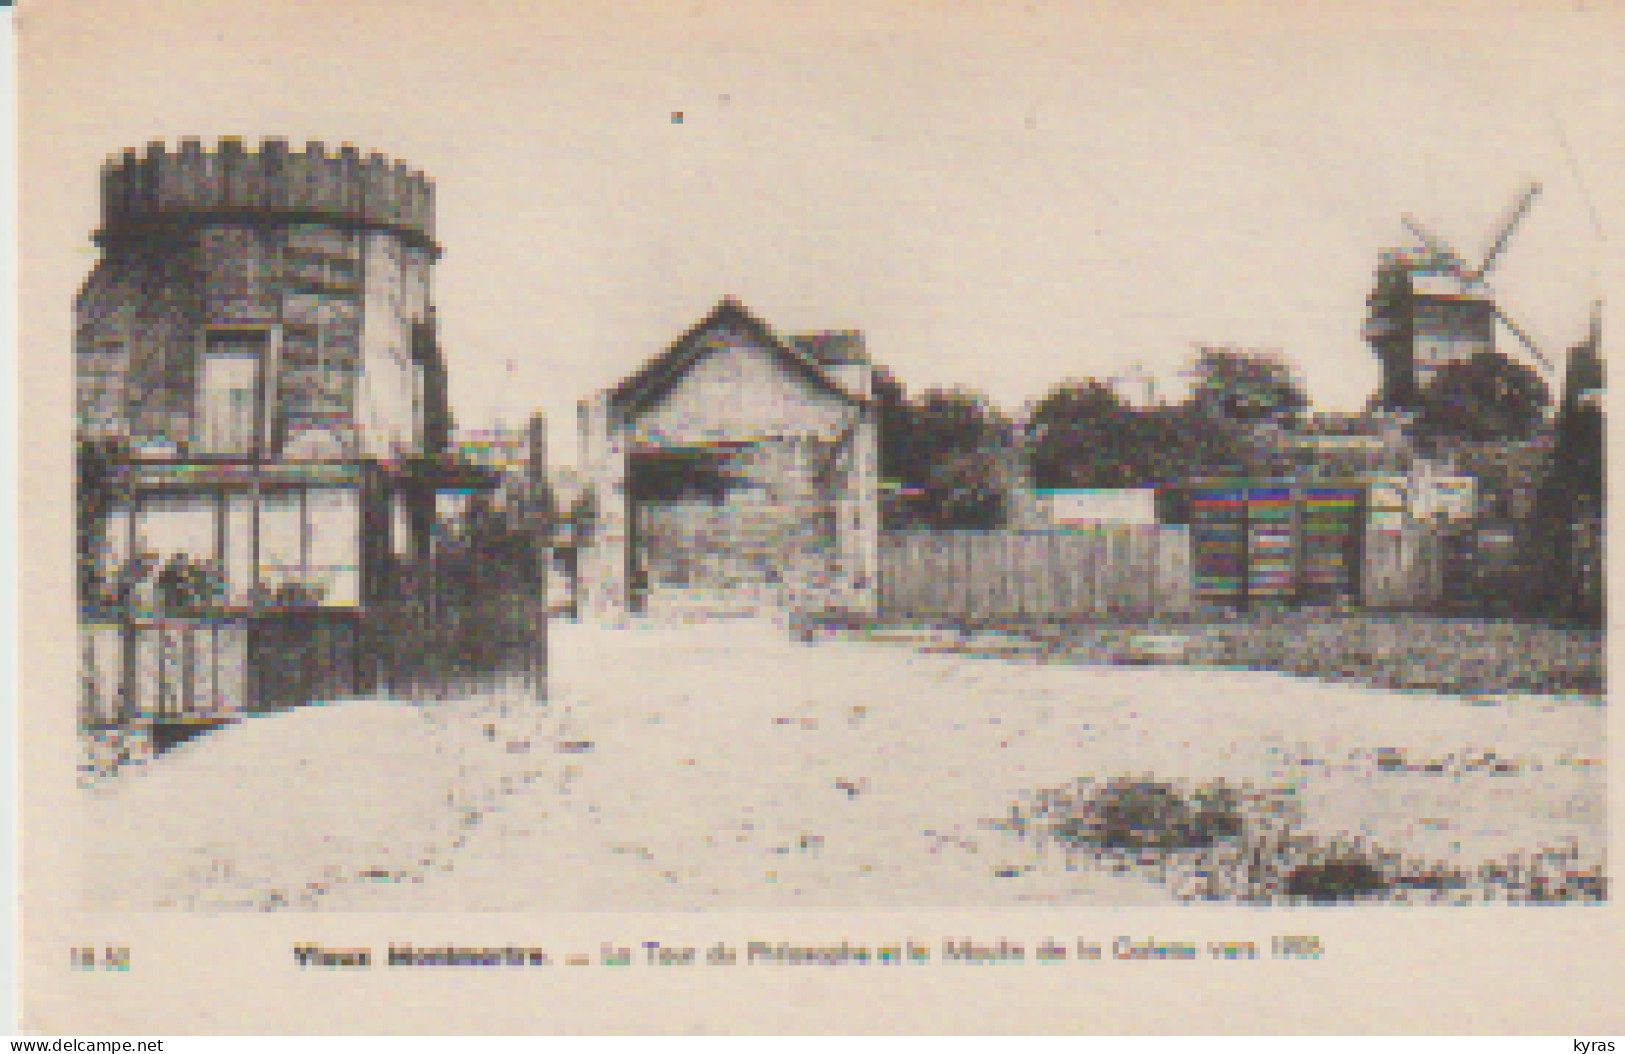 (75) PARIS. VIEUX MONTMARTRE. La Tour Du Philosophe Et Le Moulin De La Galette Vers 1905 - Arrondissement: 18